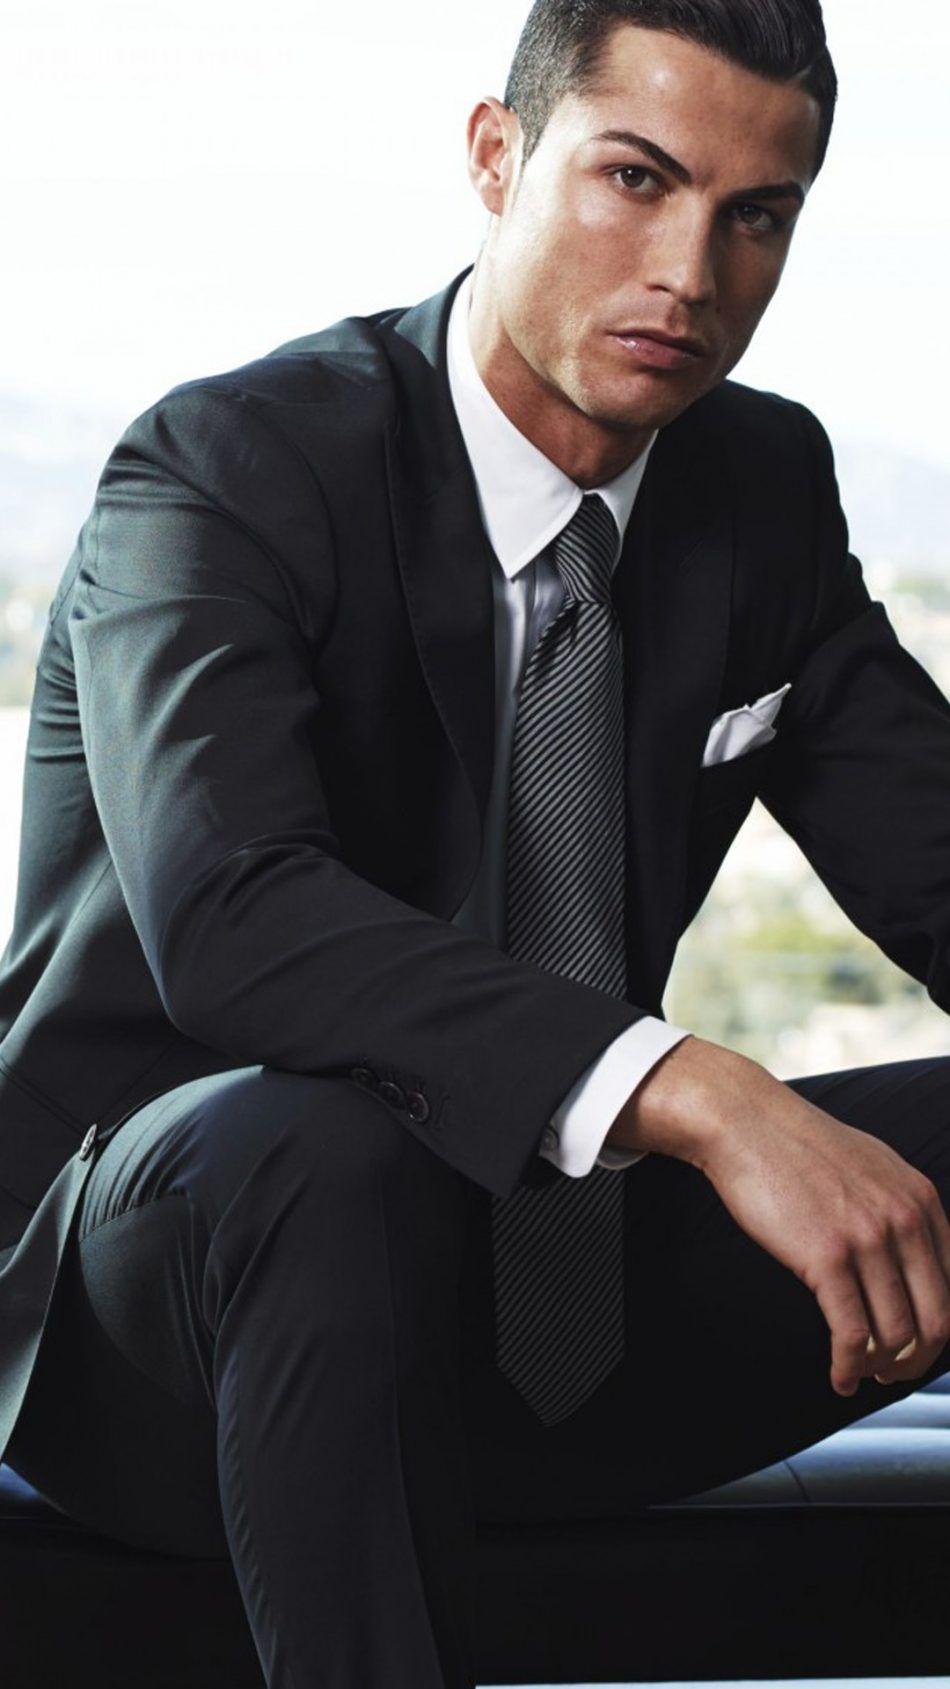 Cristiano Ronaldo Suit & Tie Dress 4K Ultra HD Mobile Wallpaper. Cristiano ronaldo style, Ronaldo videos, Ronaldo juventus